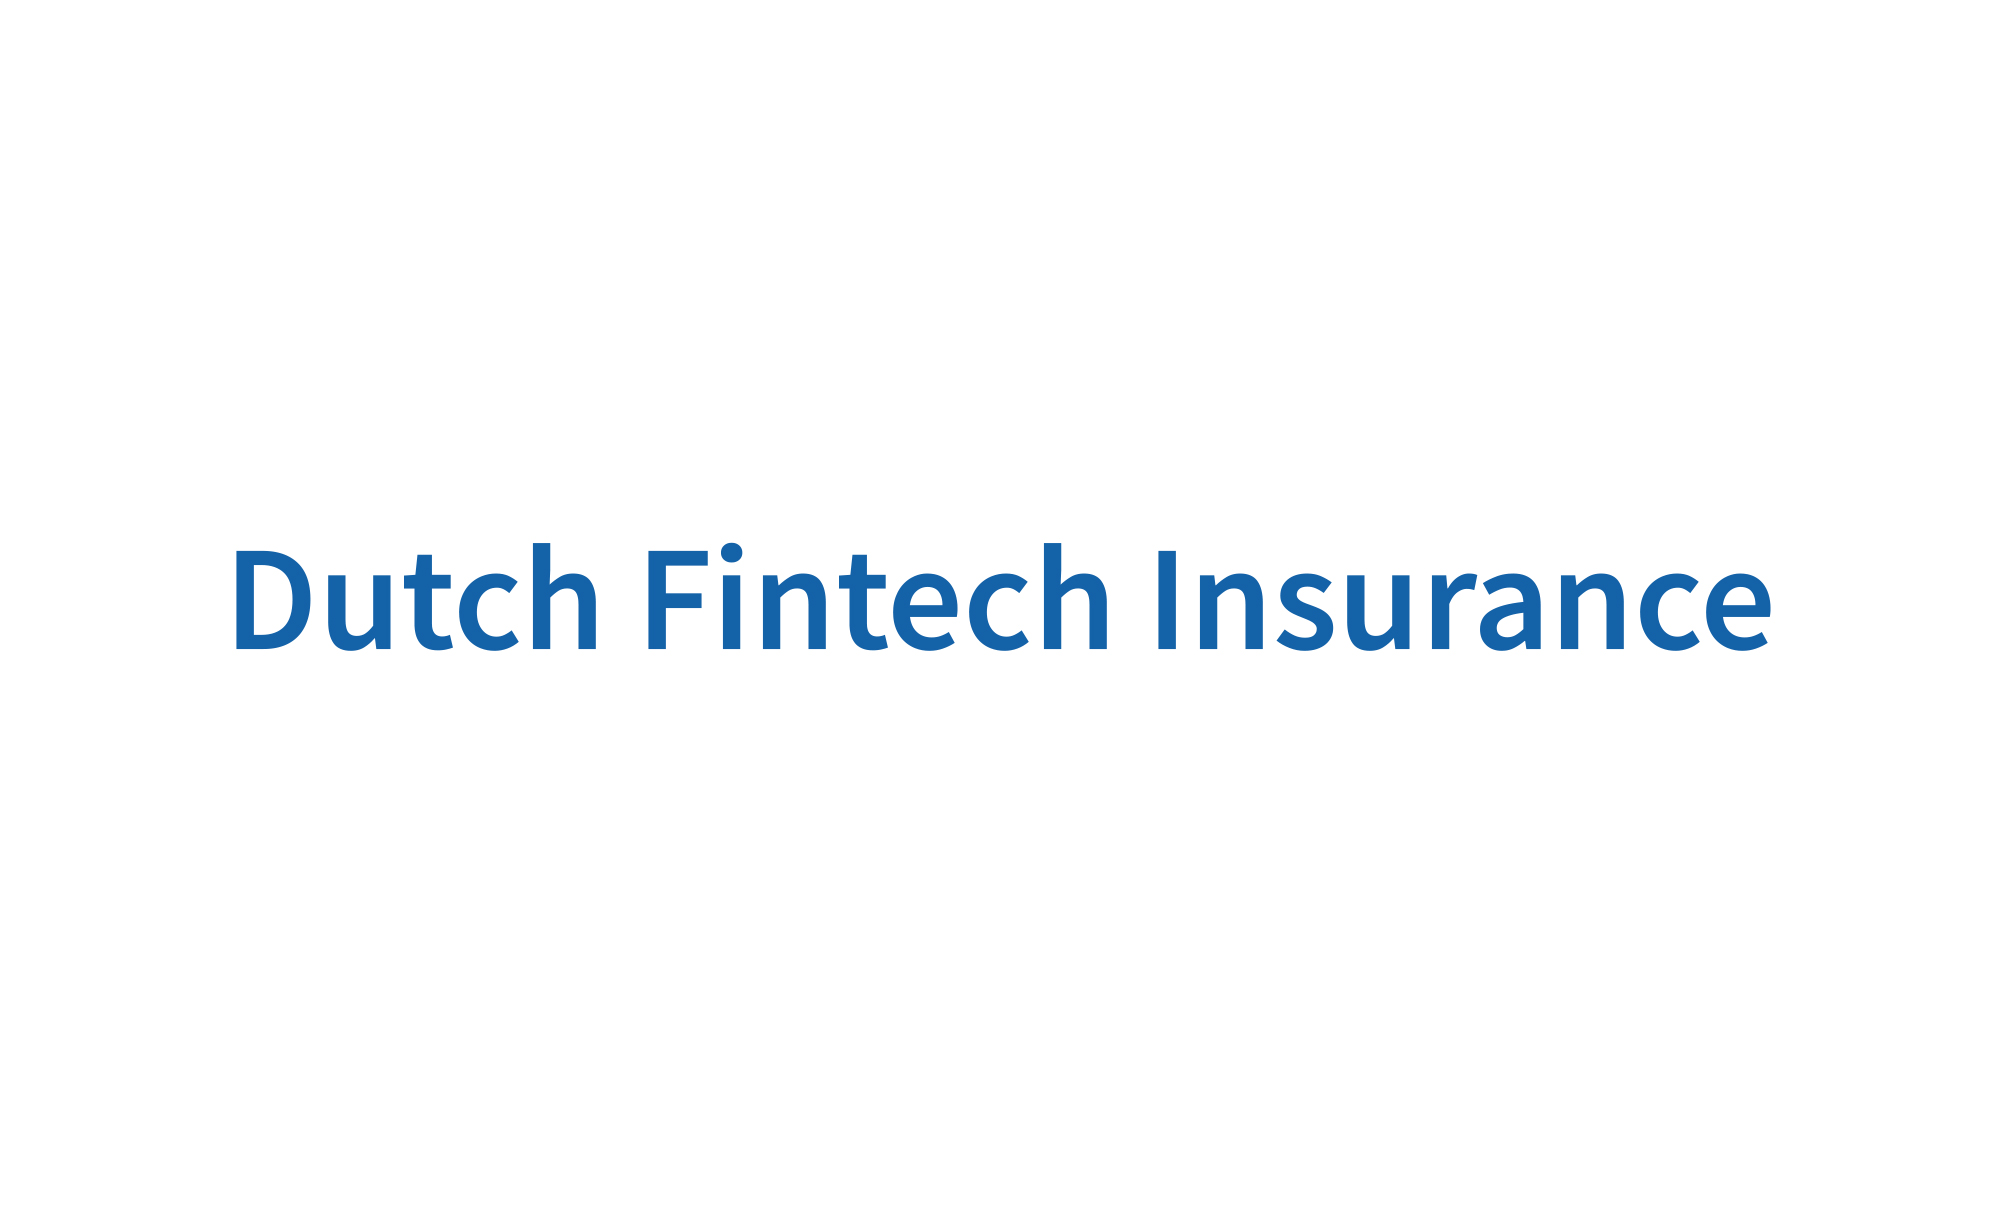 Dutch Fintech Insurance